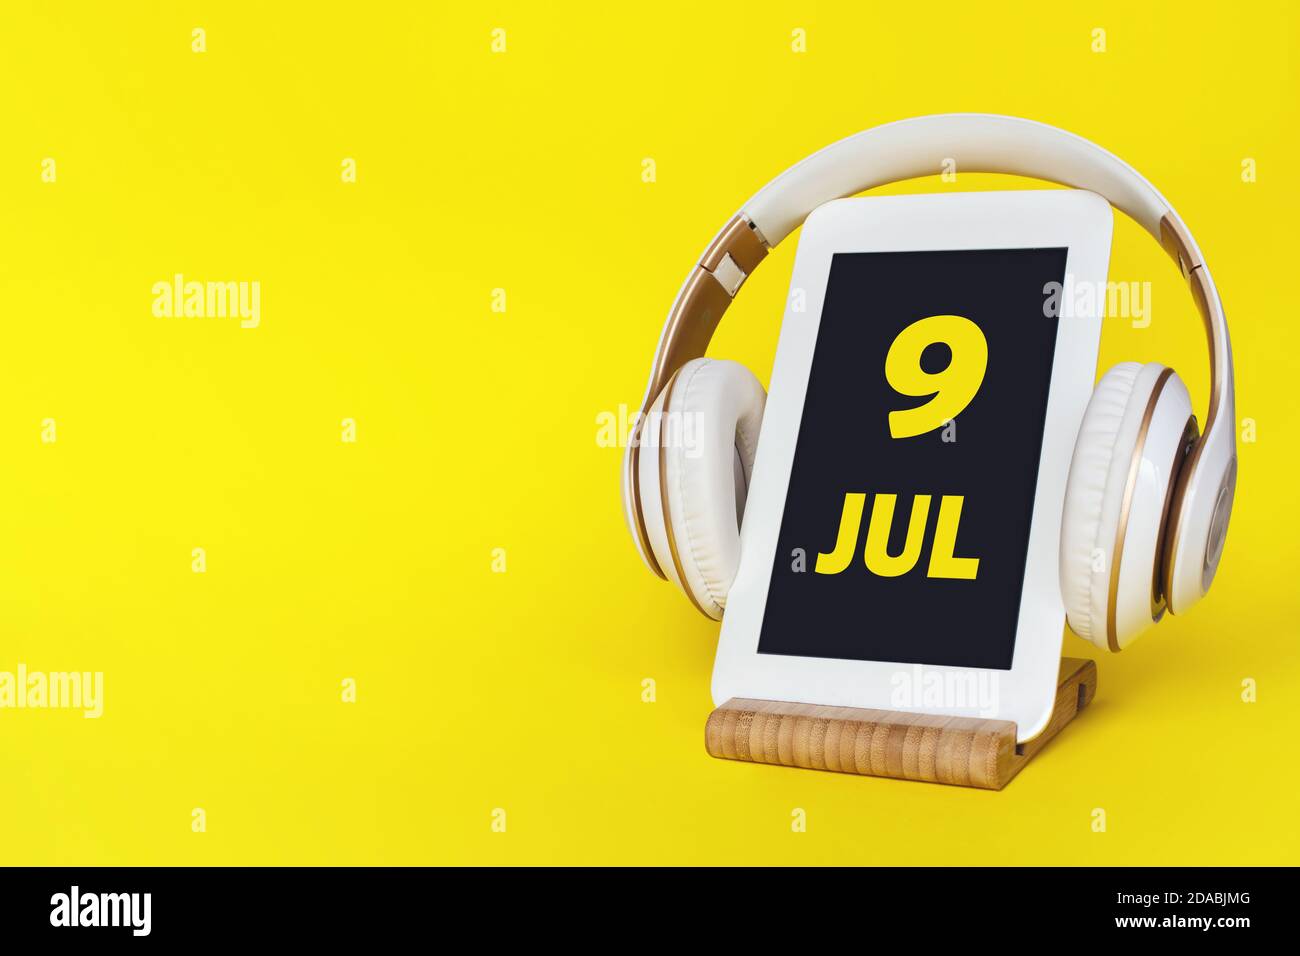 9 juillet. Jour 9 du mois, date du calendrier. Casque élégant et tablette moderne sur fond jaune. Espace pour le texte. Éducation, technologie, style de vie. Banque D'Images